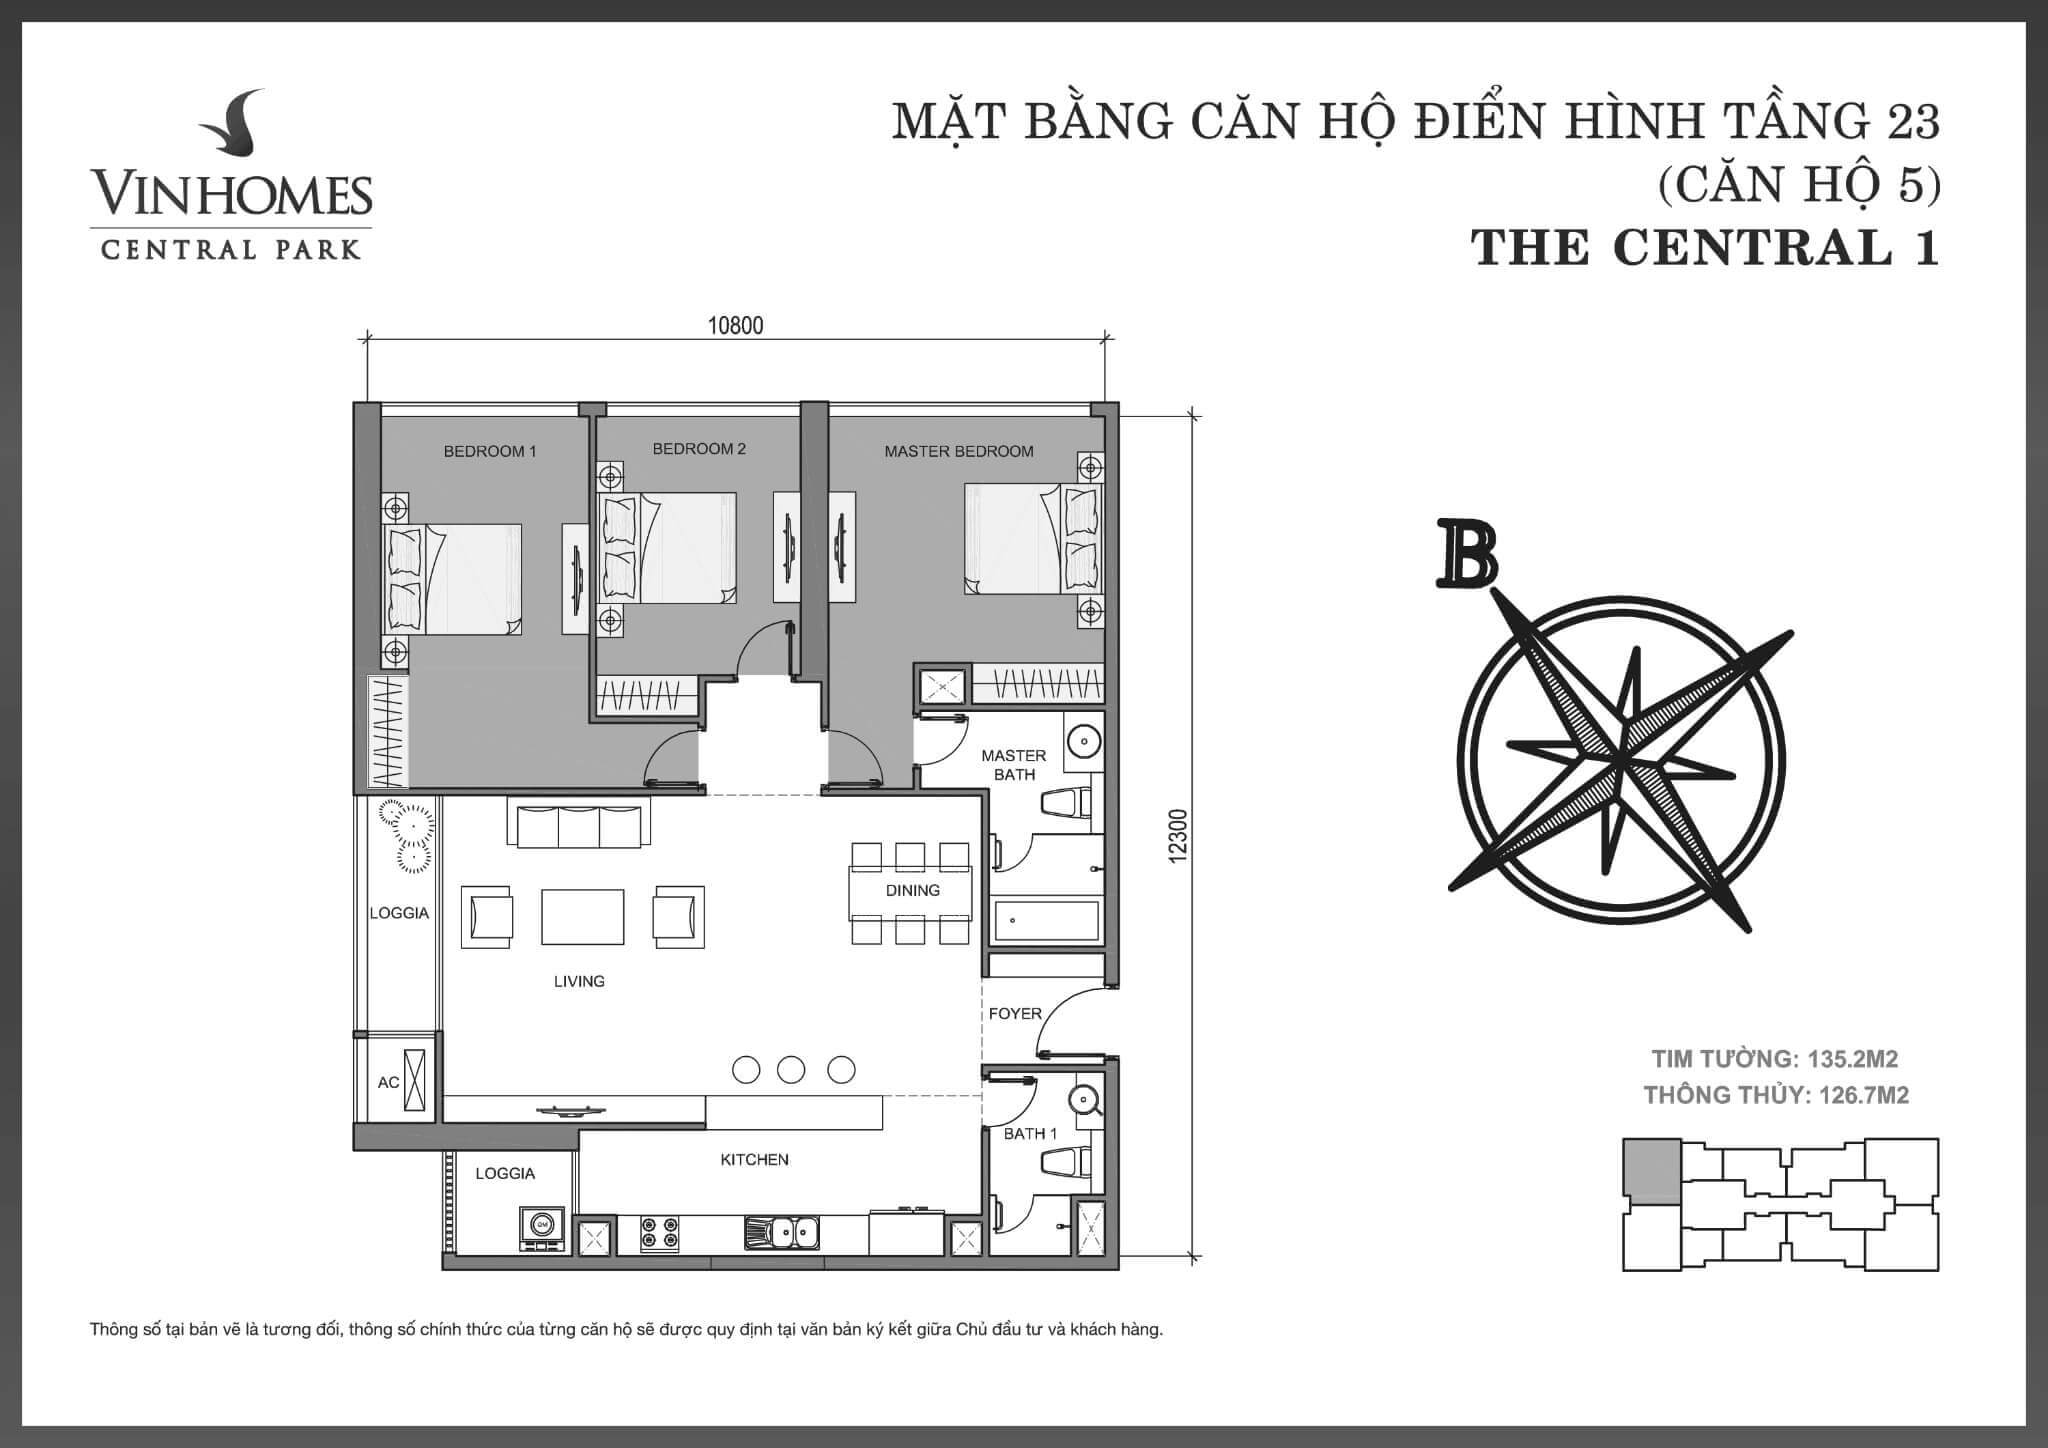 layout căn hộ số 5 tầng 23 Central 1